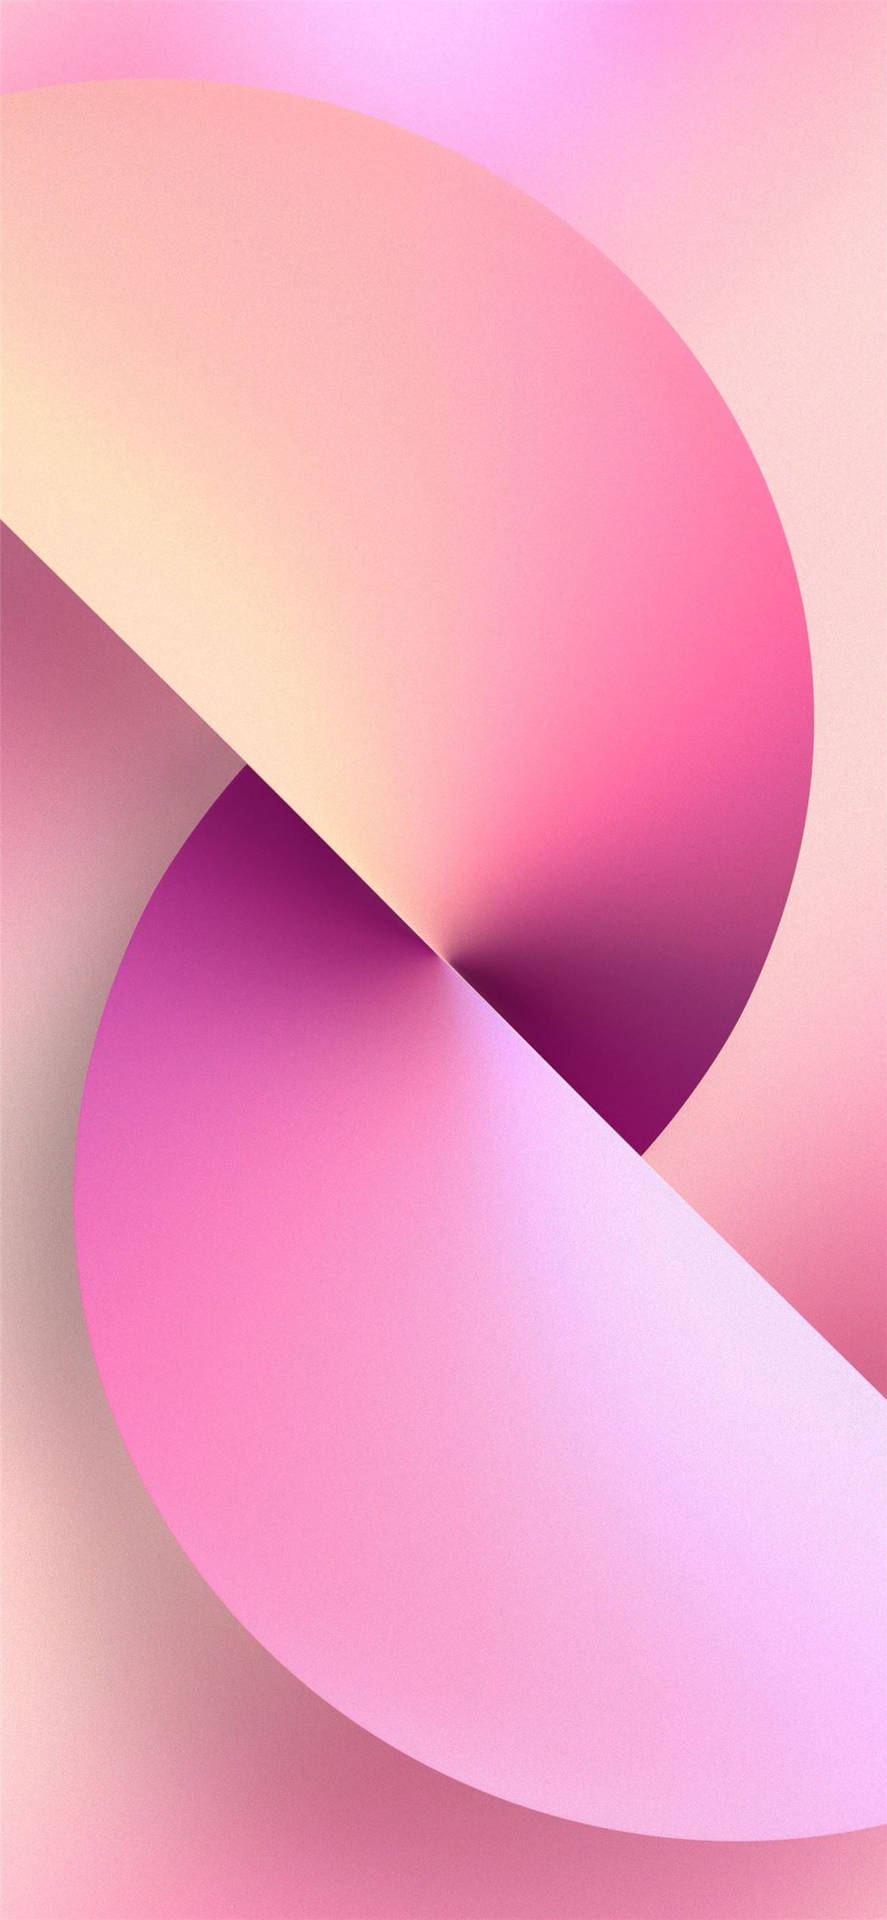 Klar til en glat, farverig oplevelse - fra Pink Iphone XR Pro tapet Wallpaper